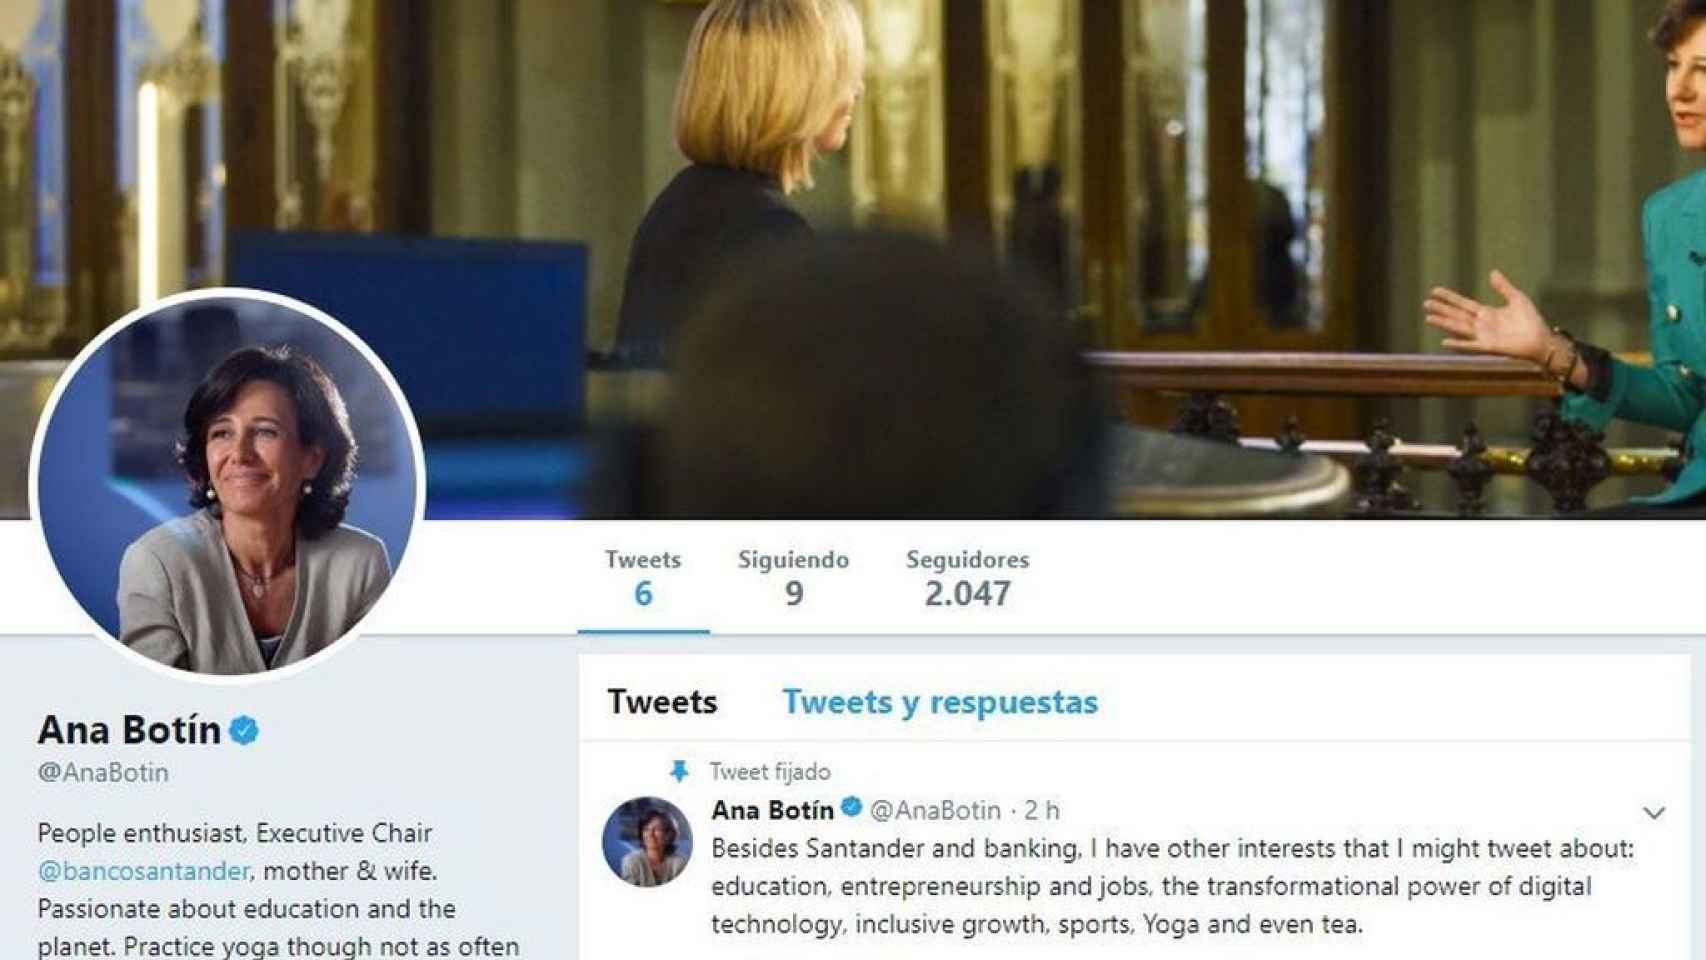 Captura de la cuenta de Ana Botín en Twitter.